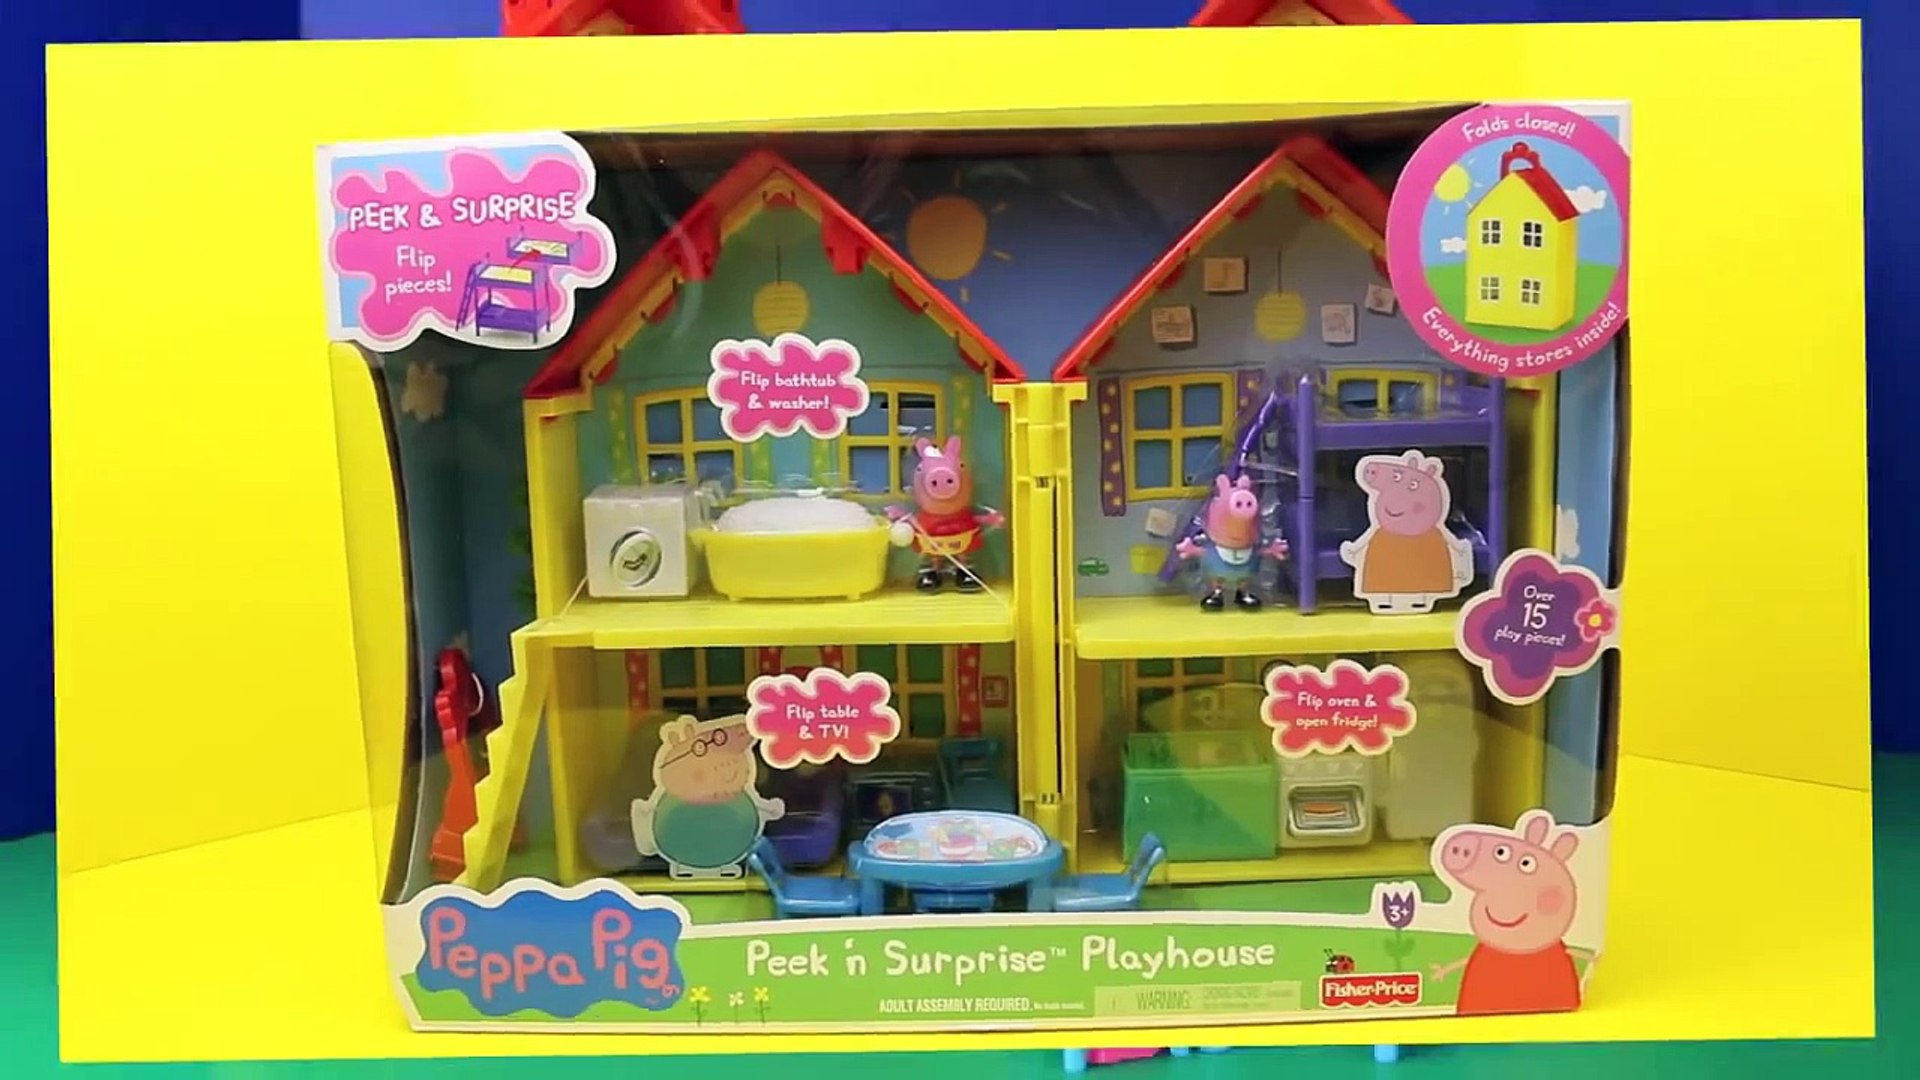 genevieve's playhouse peppa pig